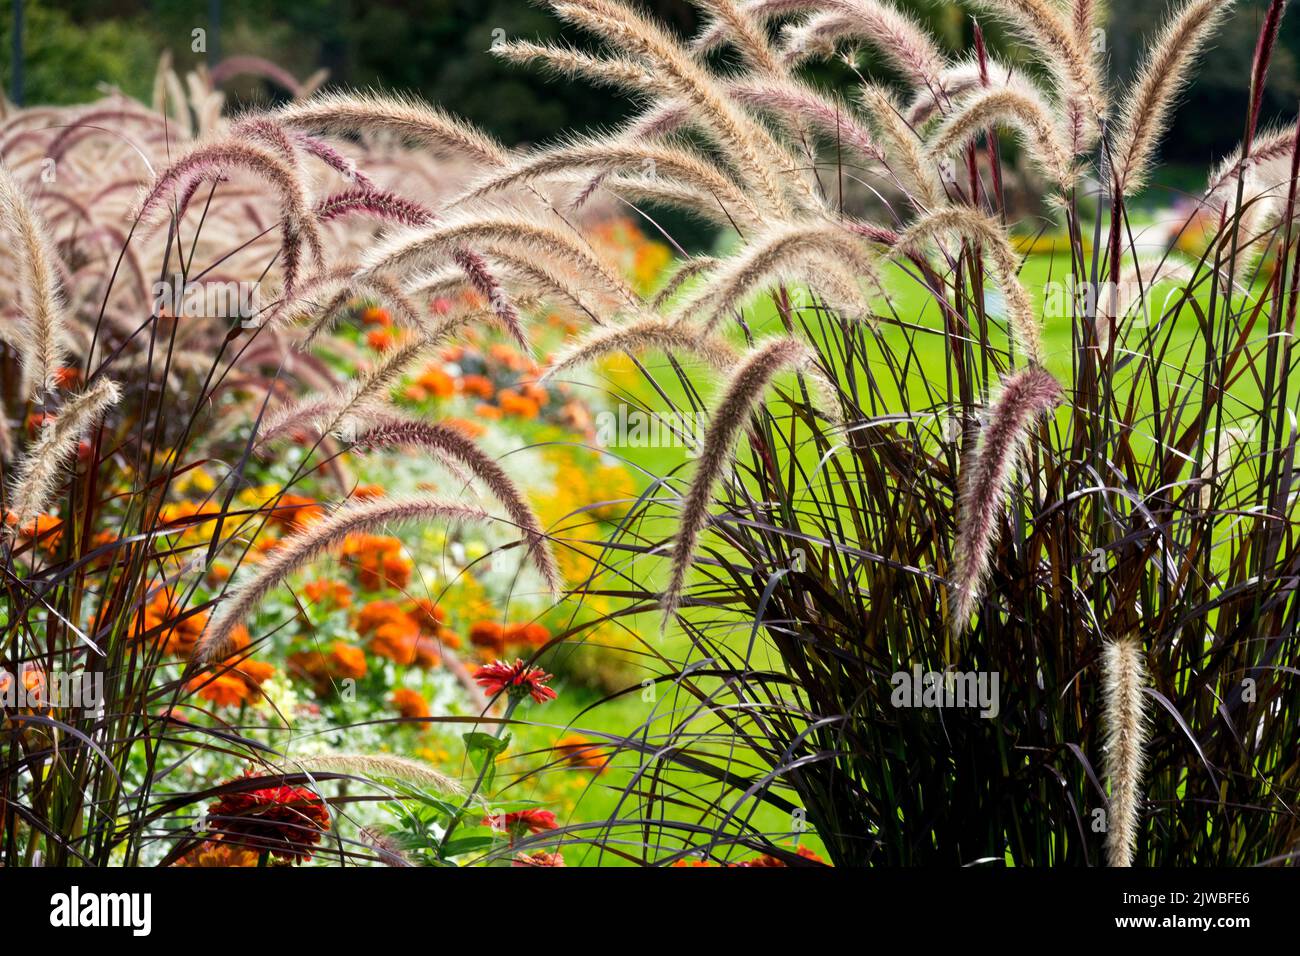 Panicules pourpres de l'herbe sur les longues tiges, Pennisetum setaceum 'rubrum', fontaine Grass, Pennisetums graminées dans un jardin Pennisetum rubrum Banque D'Images